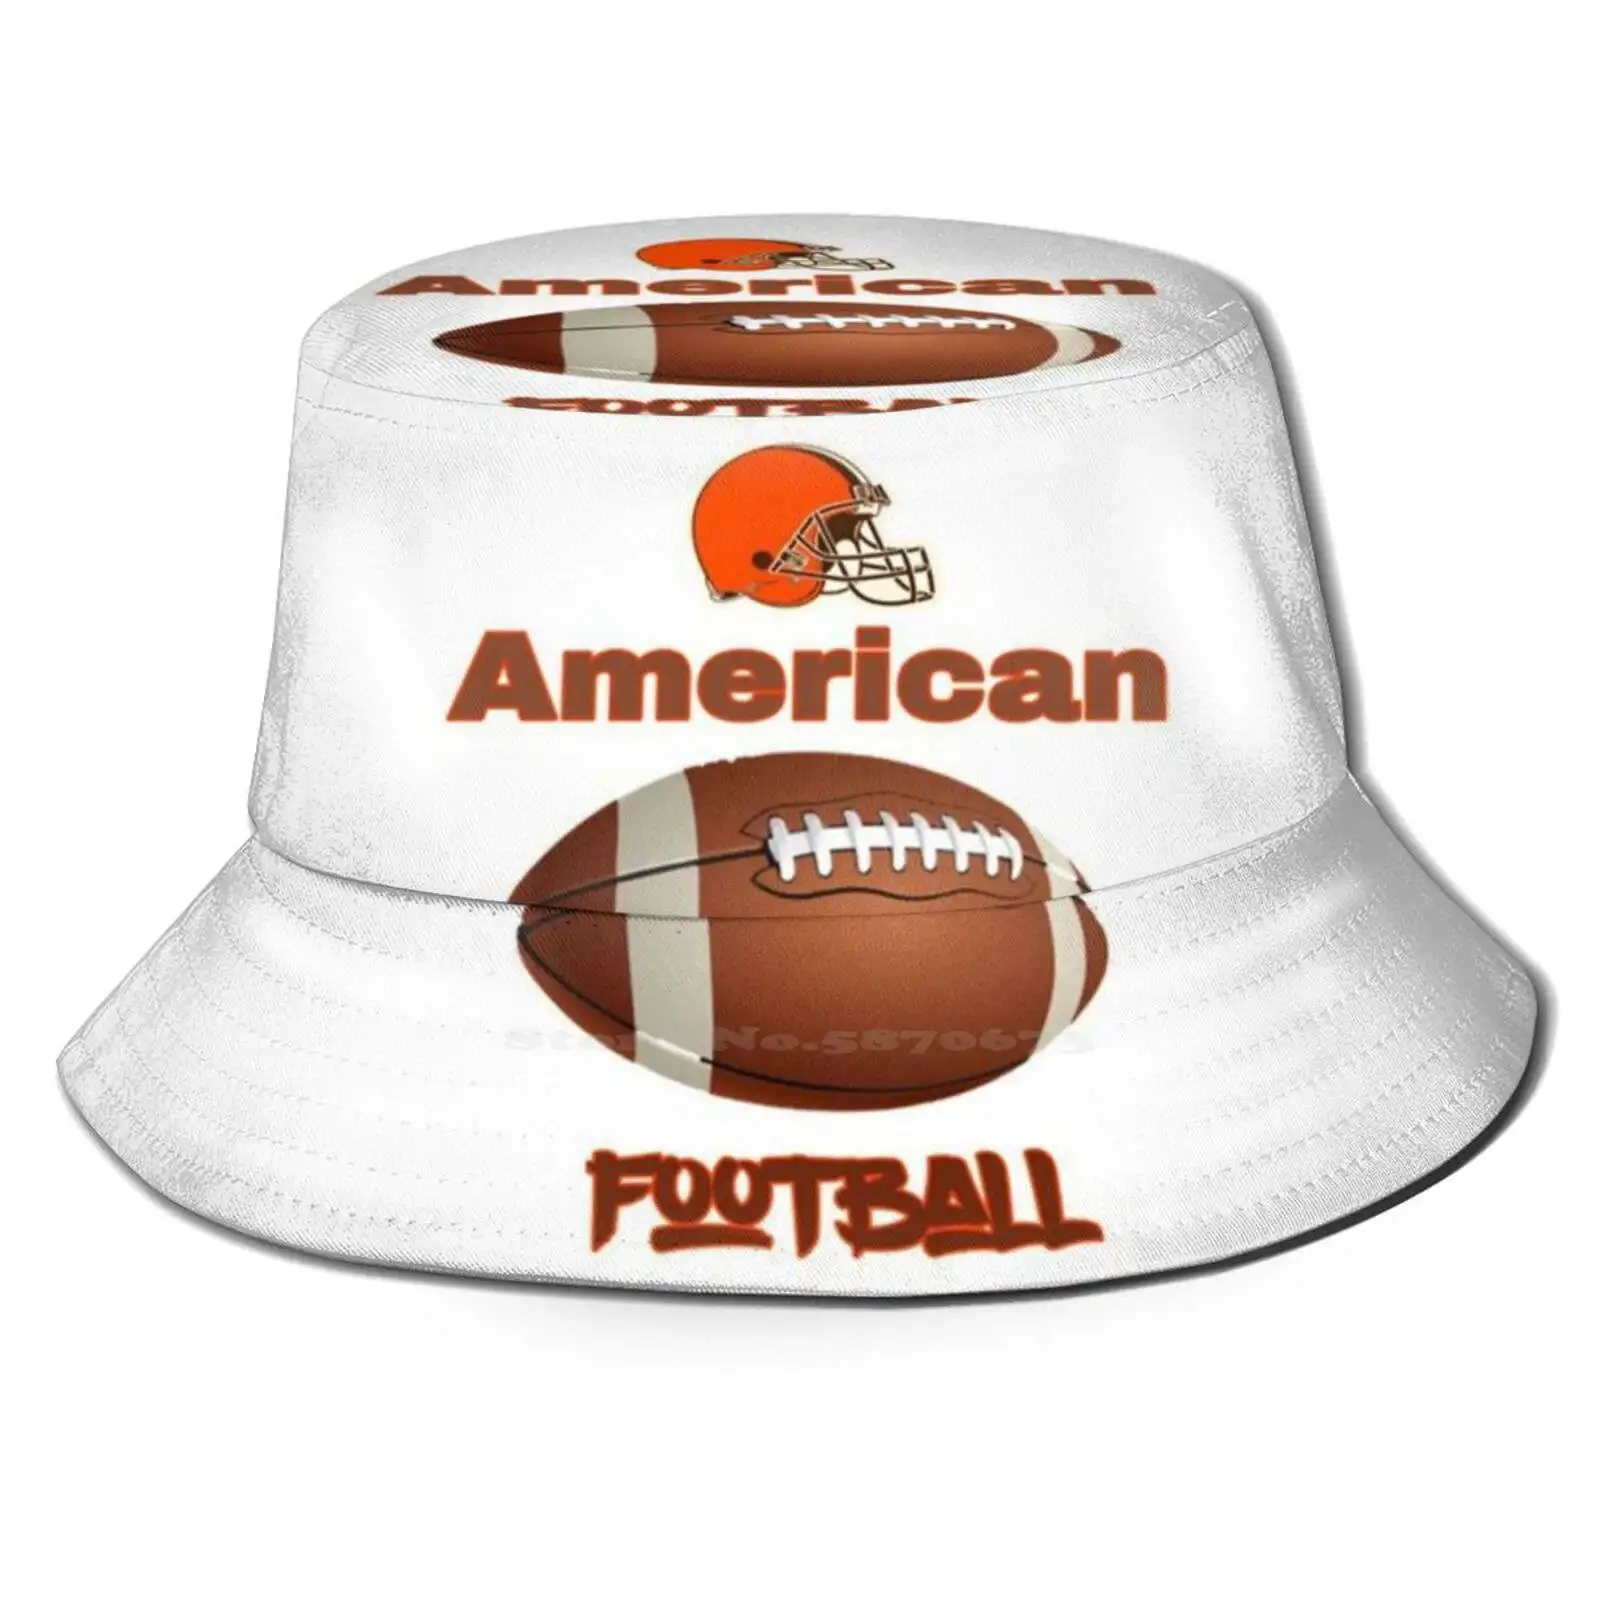 

Футболка Afl | Американский футбол | Летняя Солнцезащитная шапка унисекс на открытом воздухе, Американская Футбольная Команда американского футбола